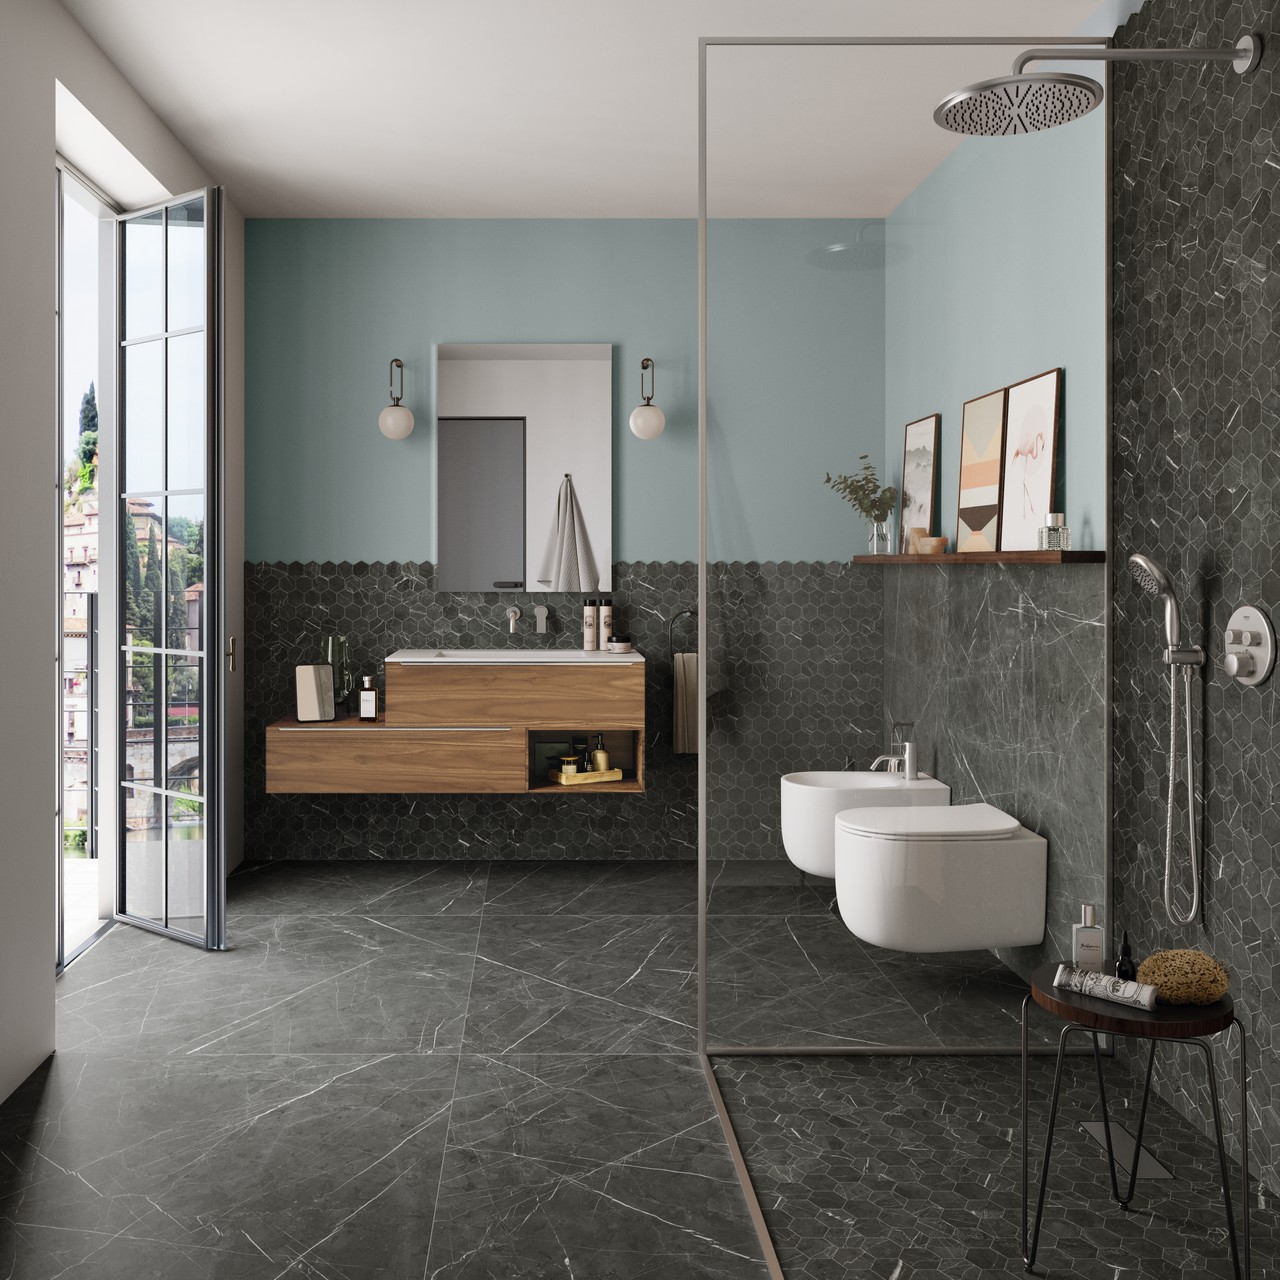 Salle de bains moderne avec sol imitation marbre gris pour une touche classique de luxe. - Inspirations Iperceramica